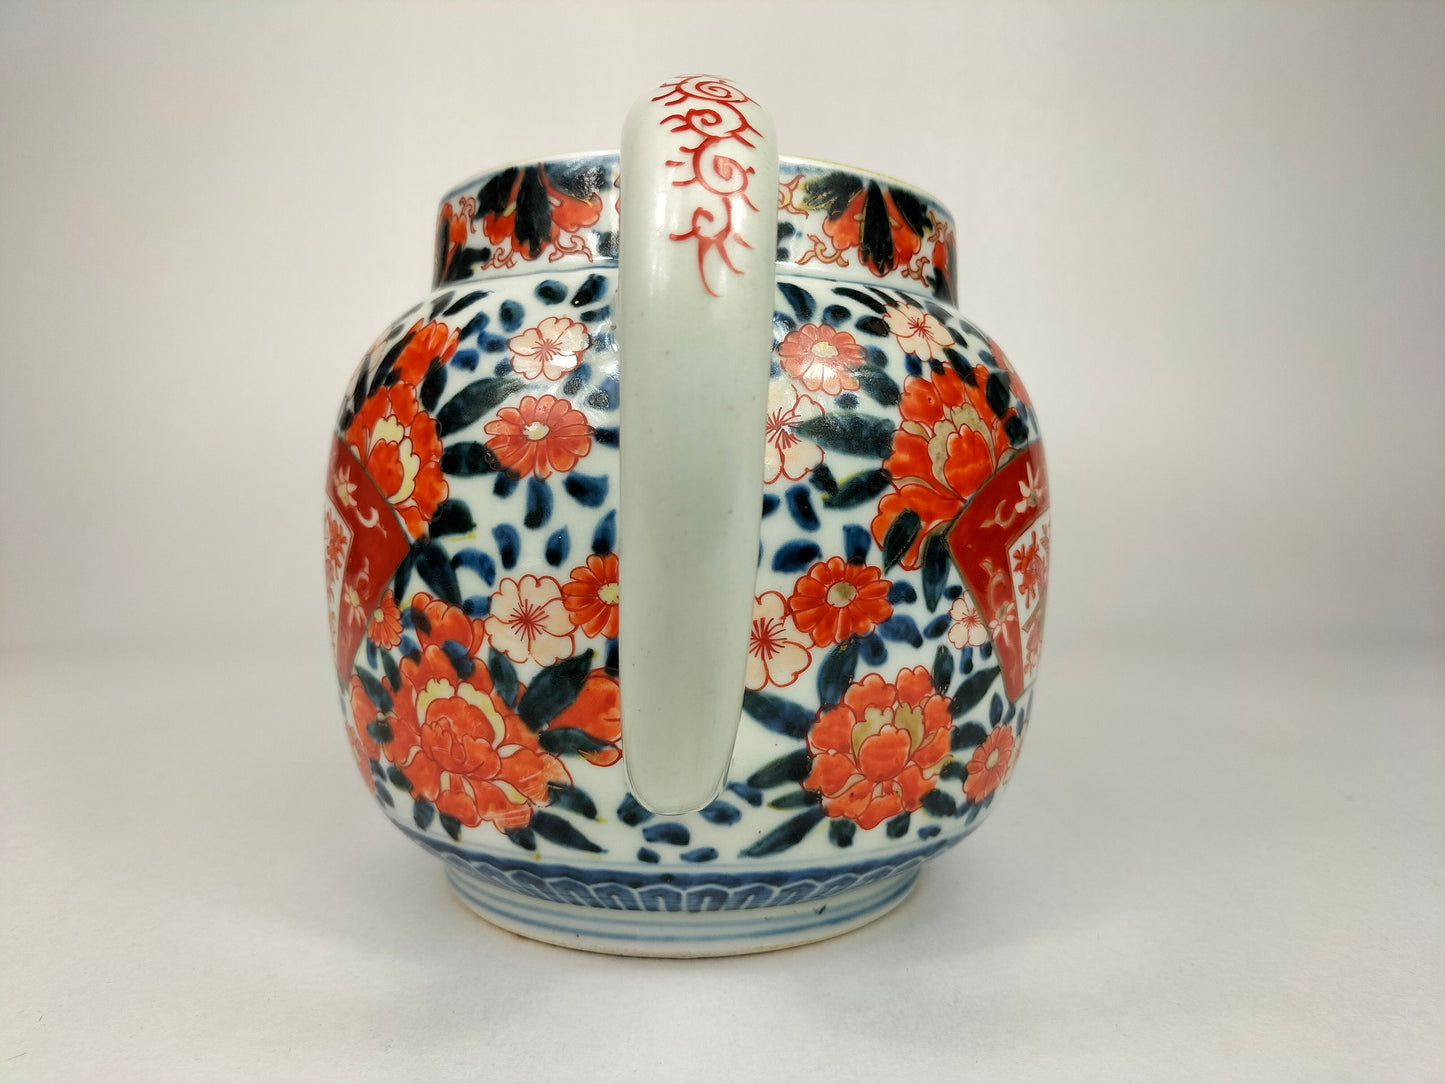 Grande jarro antigo japonês imari decorado com motivos florais // Período Meiji - século XIX